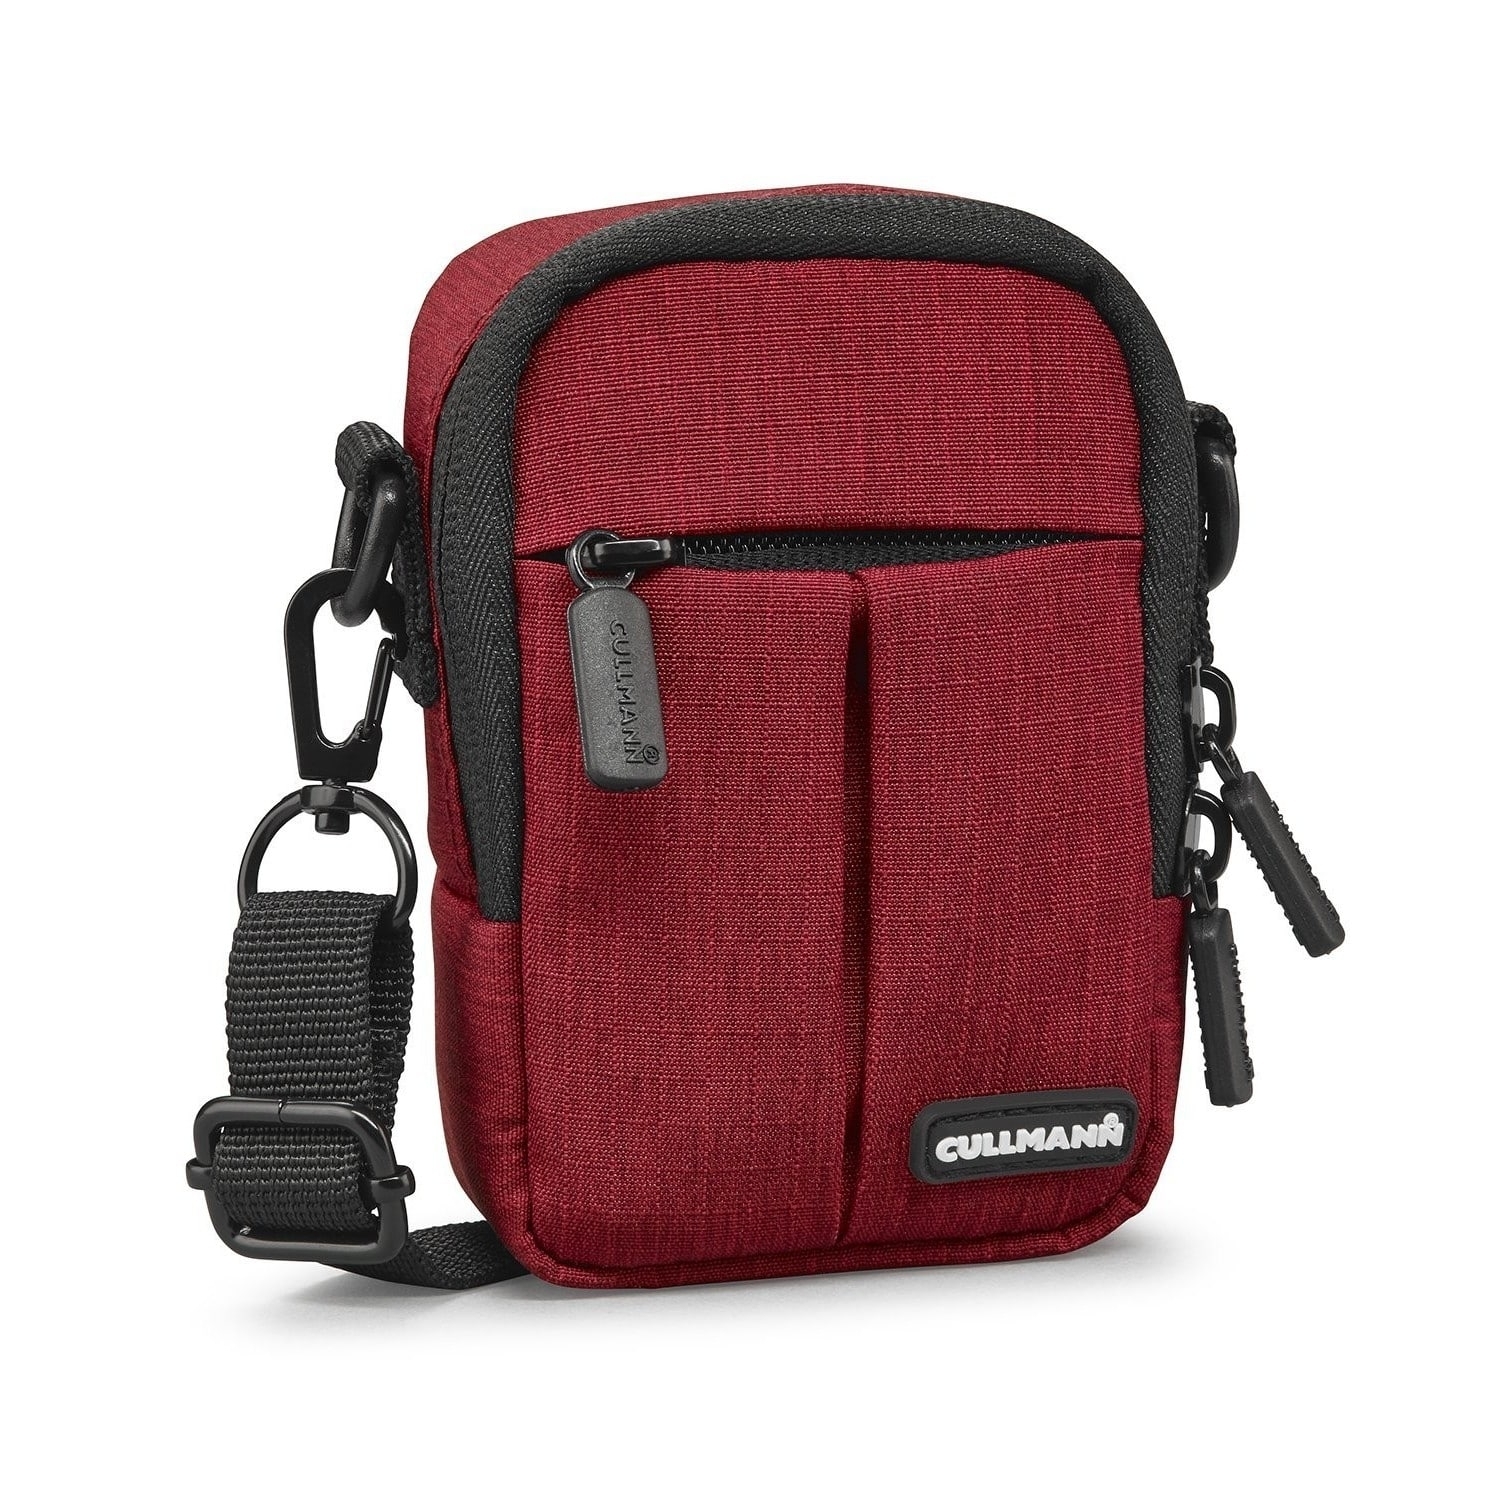 Cullmann Tasche Malaga Compact 200 red